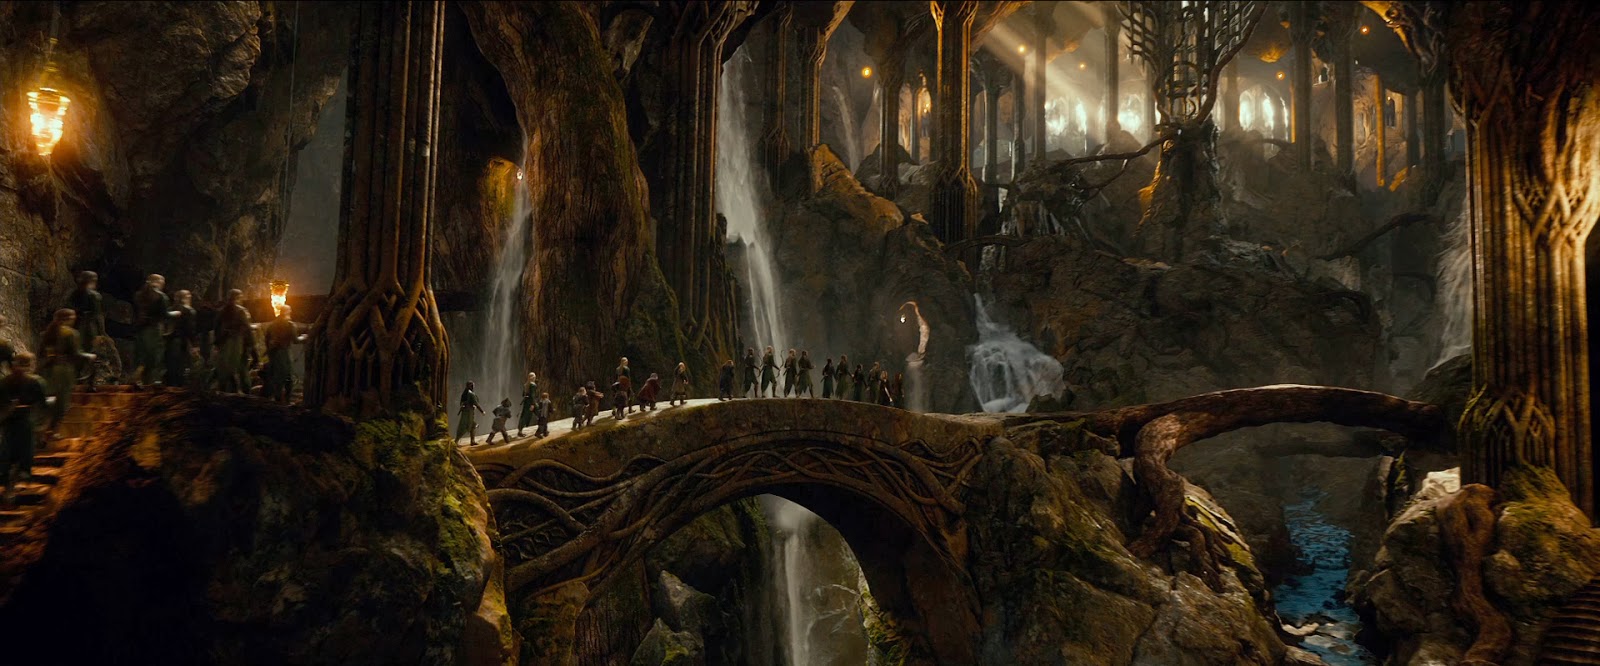 Scene iz omiljnih filmova i video igara  Hobbit+desolation+of+smaug+elves+dwarves